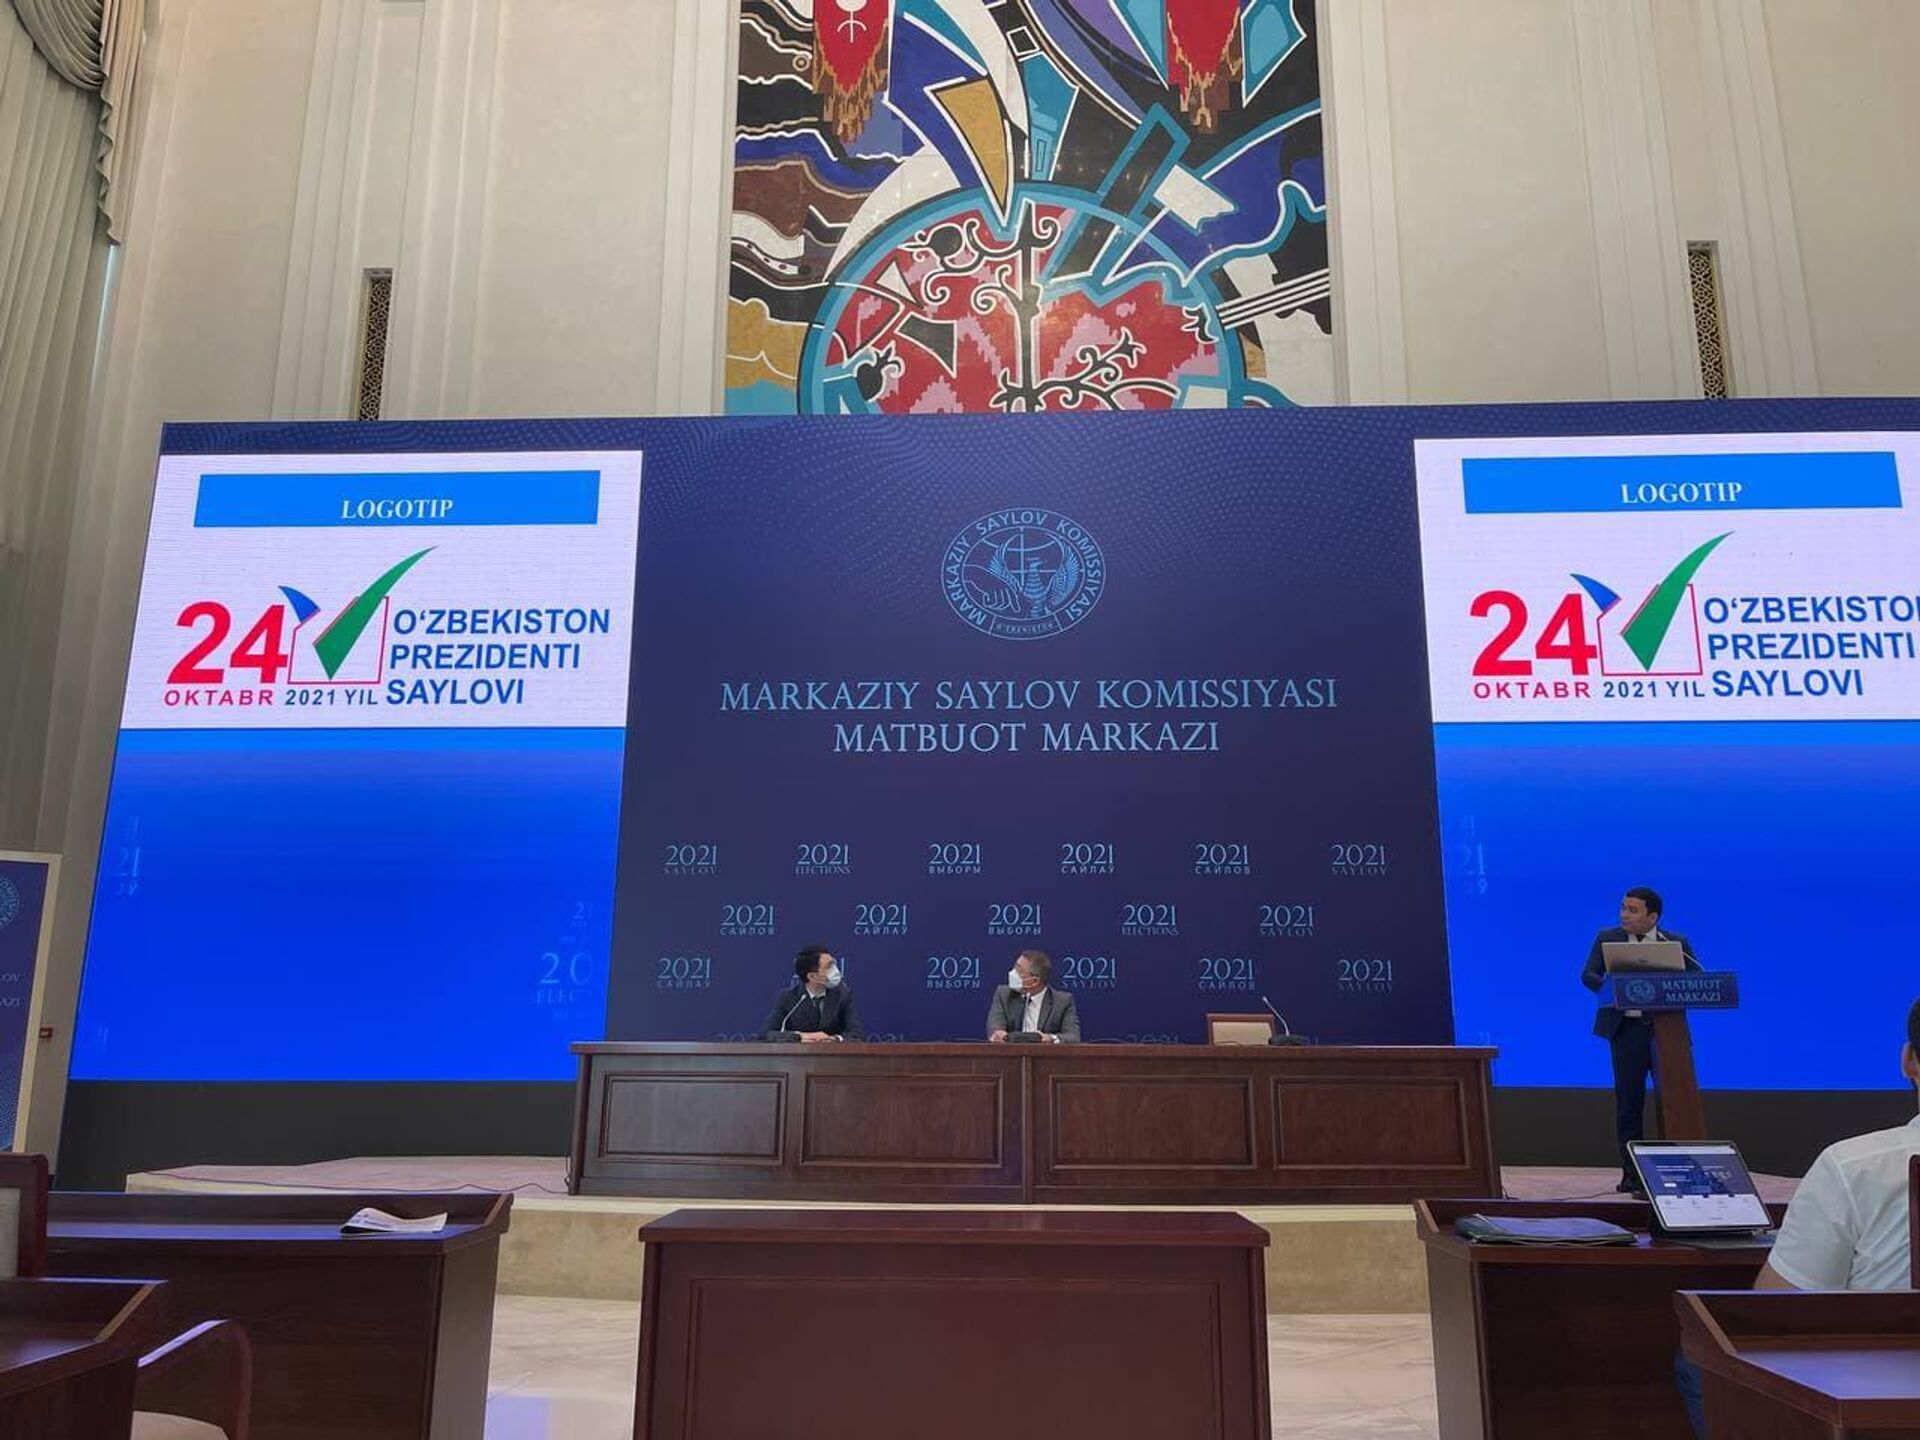 В Ташкенте состоялась презентация логотипа президентских выборов - Sputnik Ўзбекистон, 1920, 28.07.2021